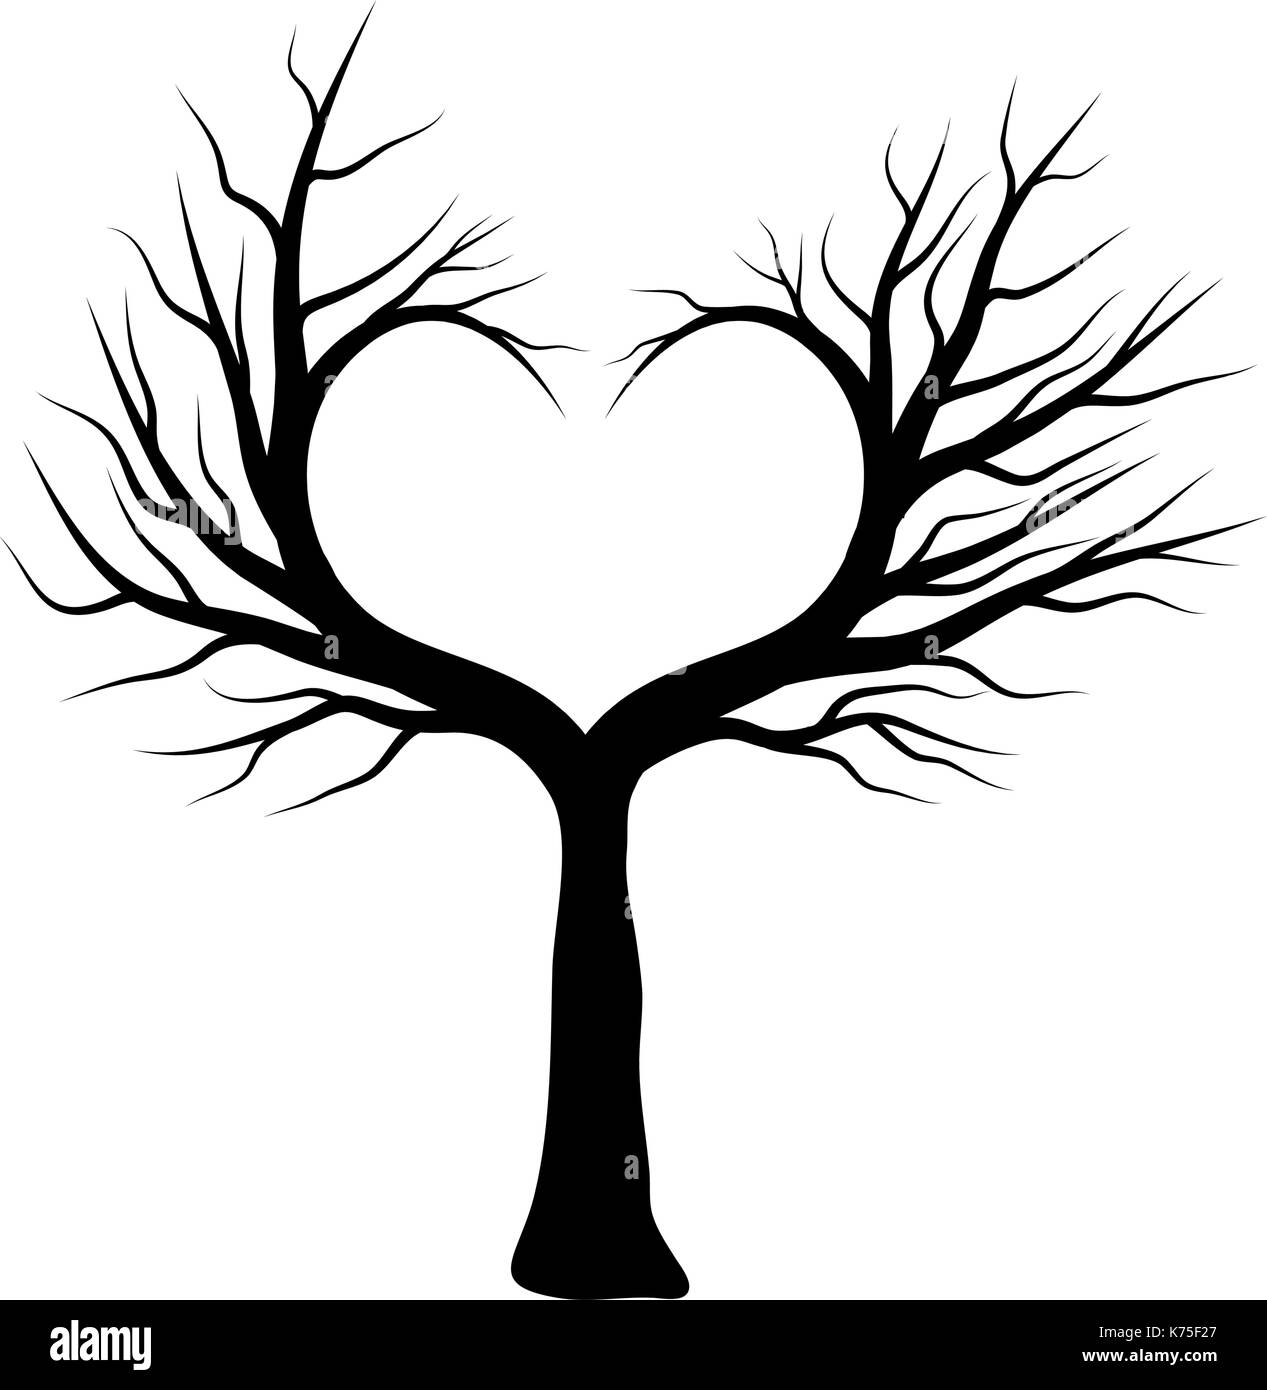 Herz Baum Vektor Symbol Icon Design Schone Abbildung Auf Weissem Hintergrund Stock Vektorgrafik Alamy